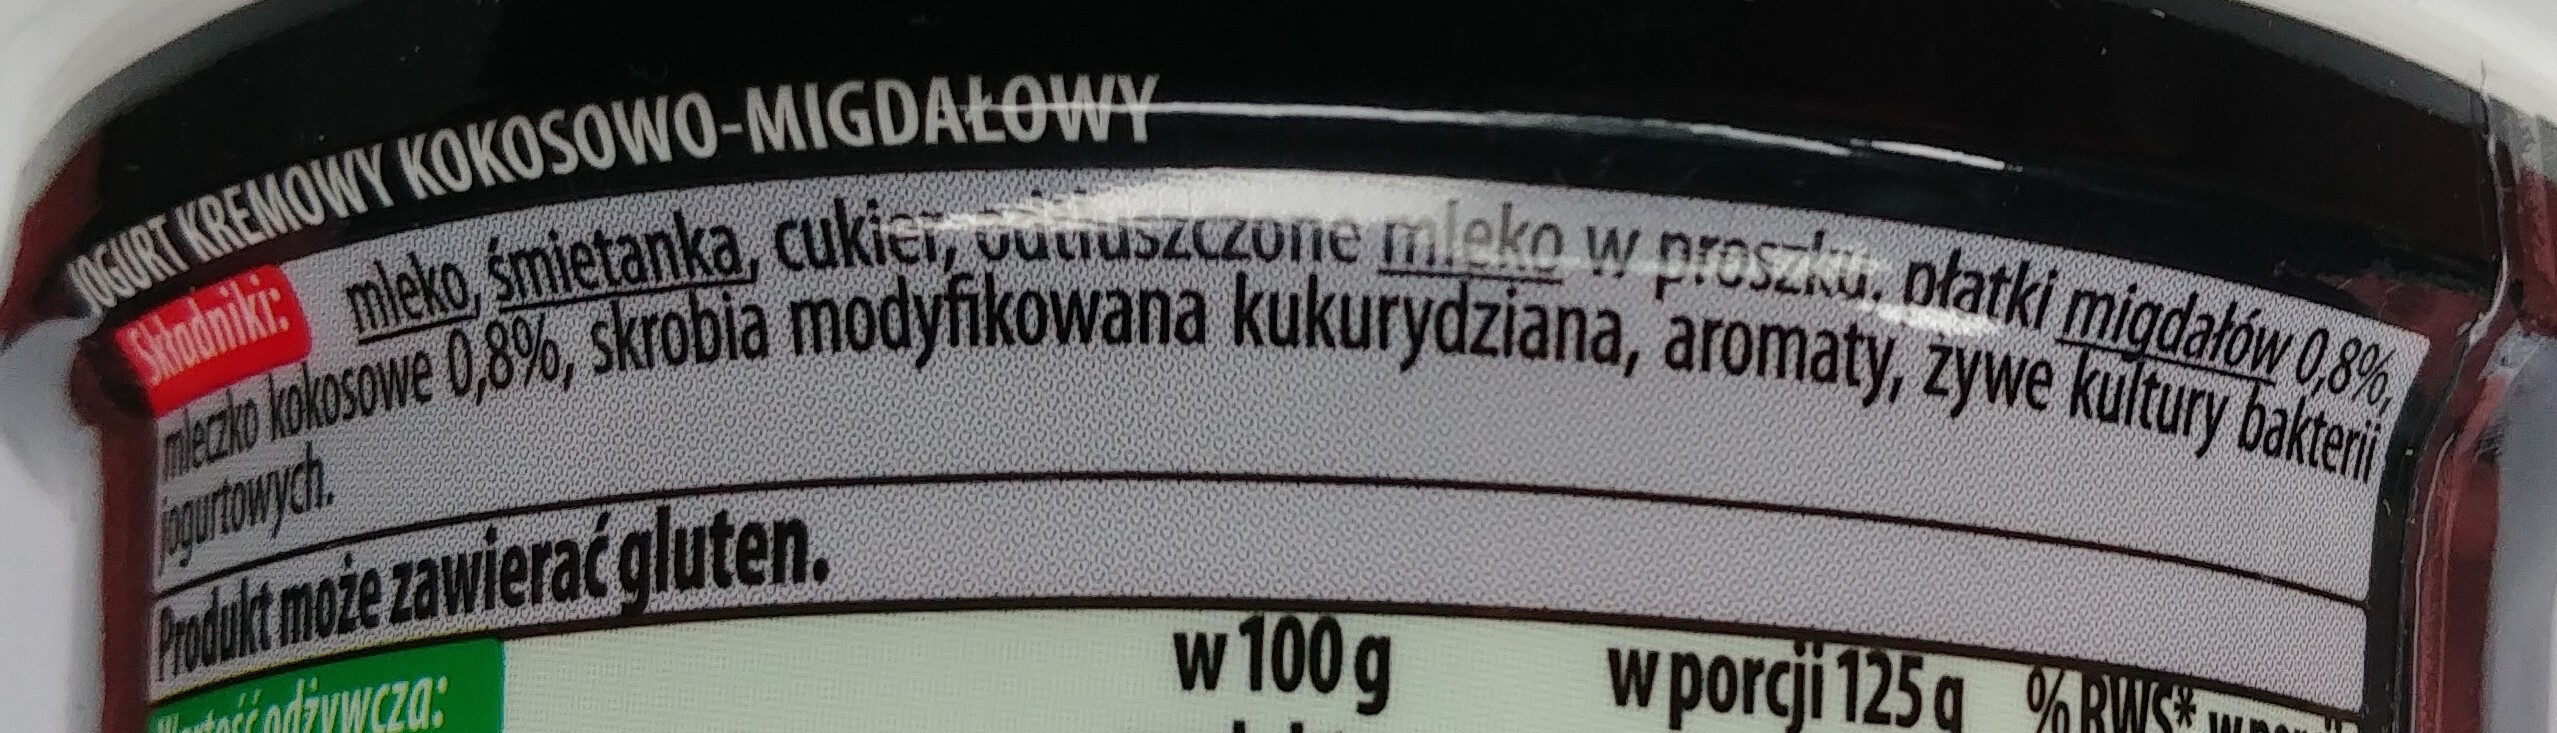 Jogurt kremowy kokosowy-migdały - Ingrediënten - pl